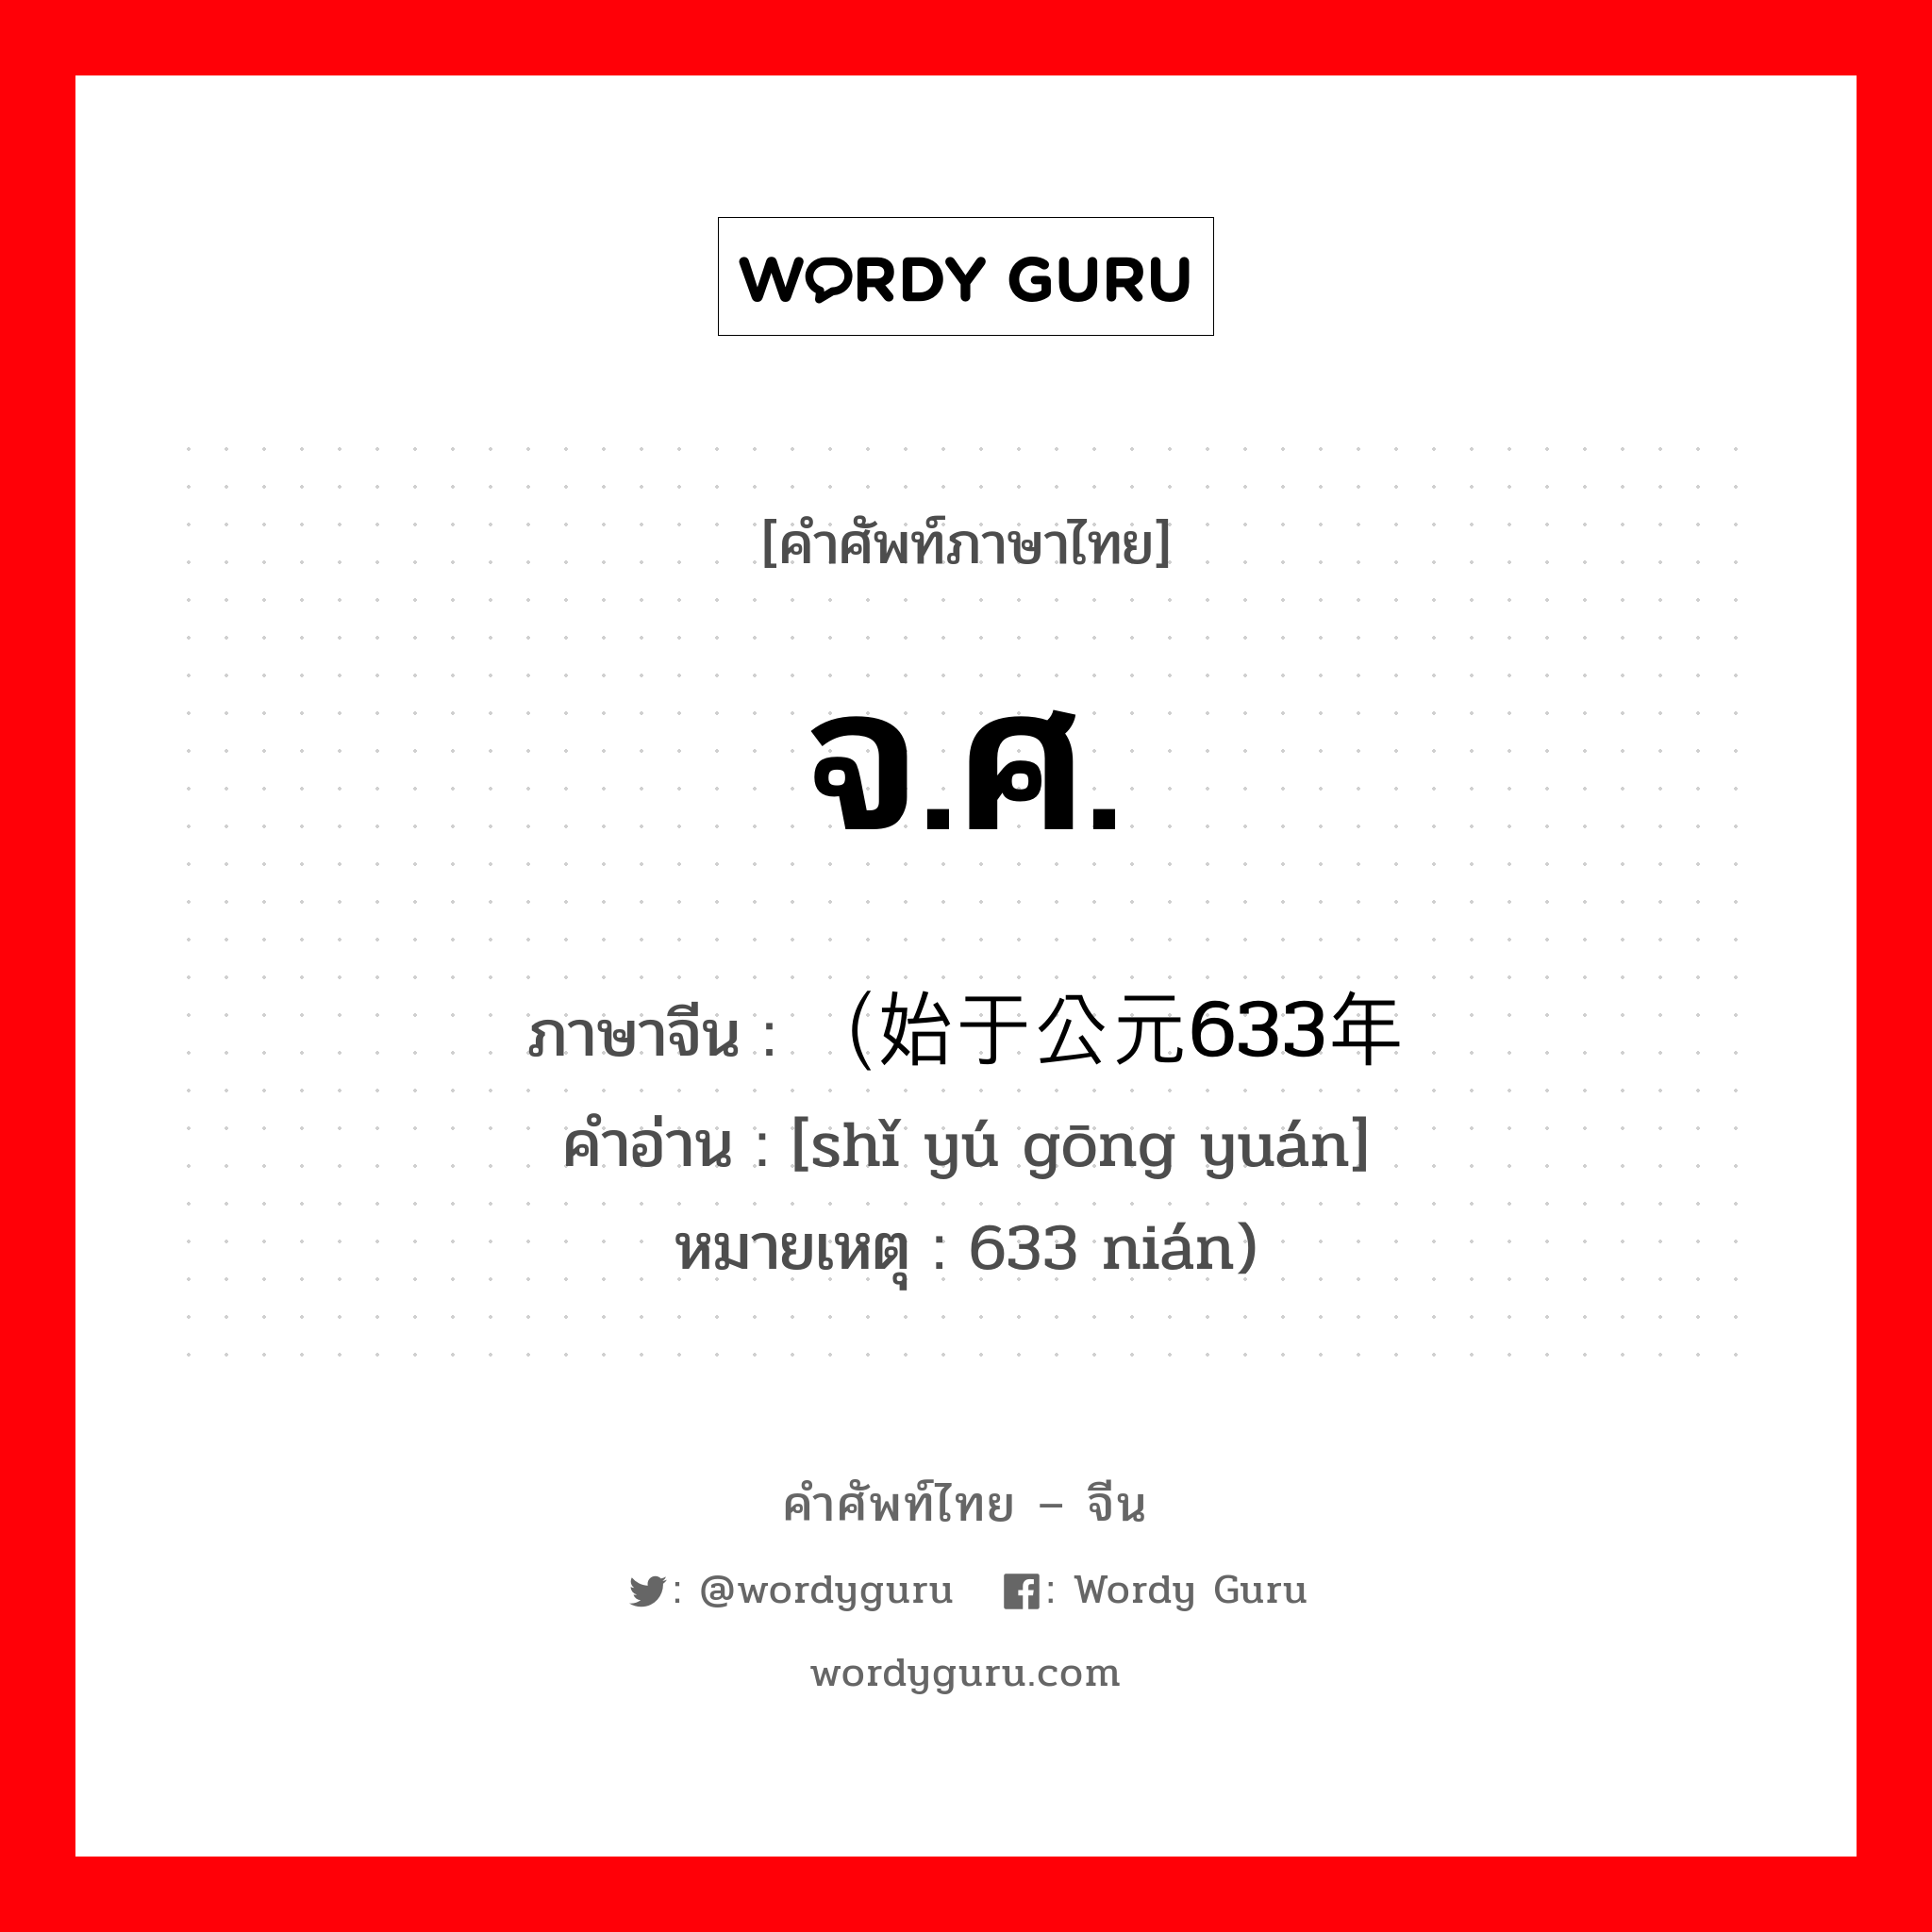 จ.ศ. ภาษาจีนคืออะไร, คำศัพท์ภาษาไทย - จีน จ.ศ. ภาษาจีน （始于公元633年 คำอ่าน [shǐ yú gōng yuán] หมายเหตุ 633 nián)